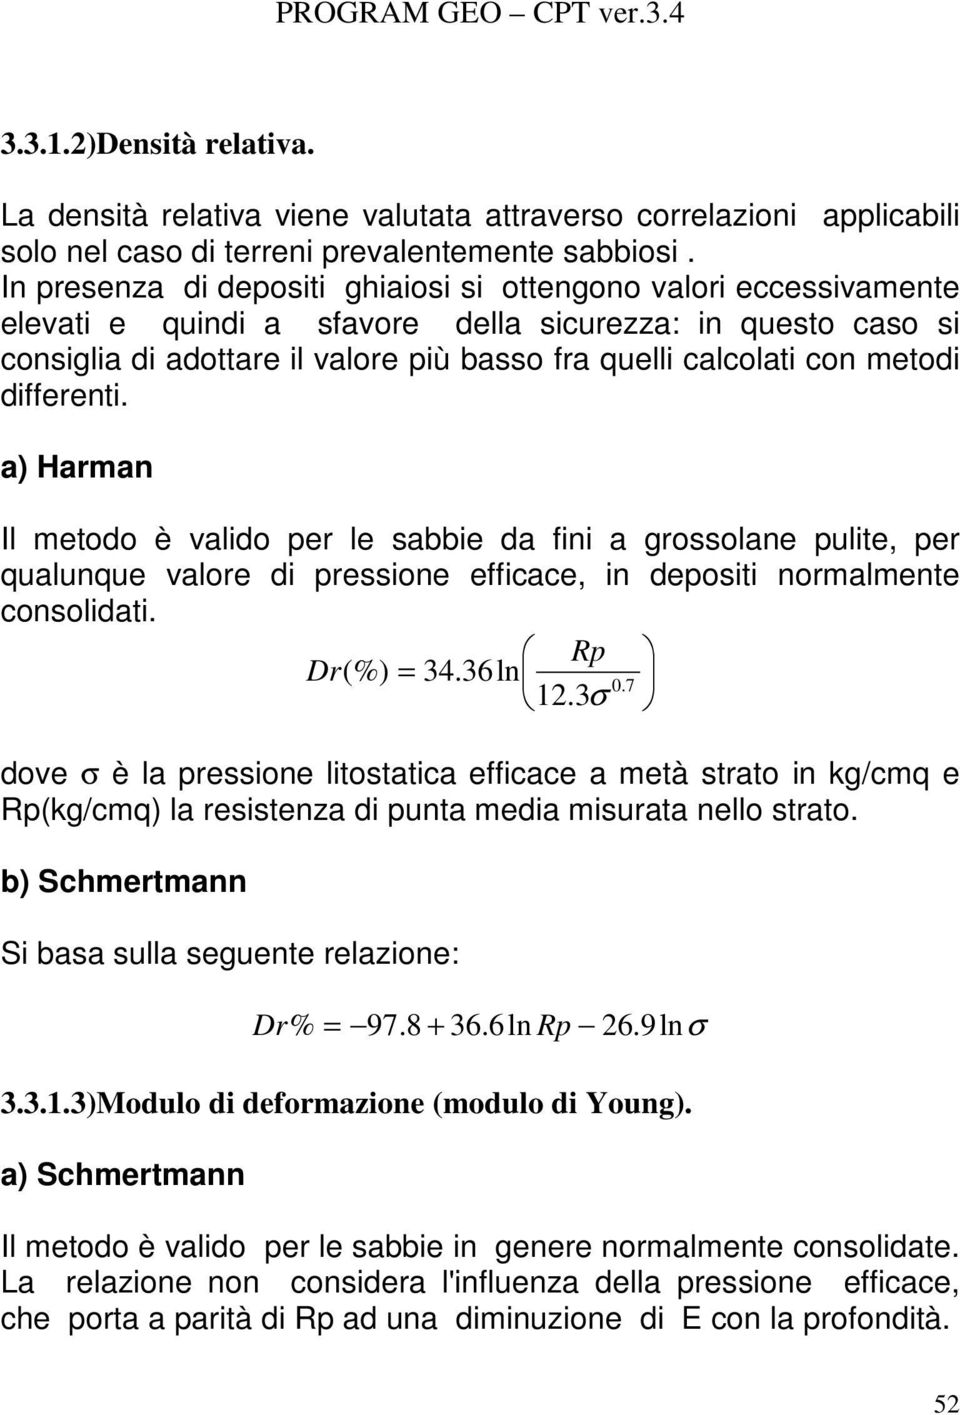 metodi differenti. a) Harman Il metodo è valido per le sabbie da fini a grossolane pulite, per qualunque valore di pressione efficace, in depositi normalmente consolidati. Rp Dr(%) = 34.36ln 0. 7 12.